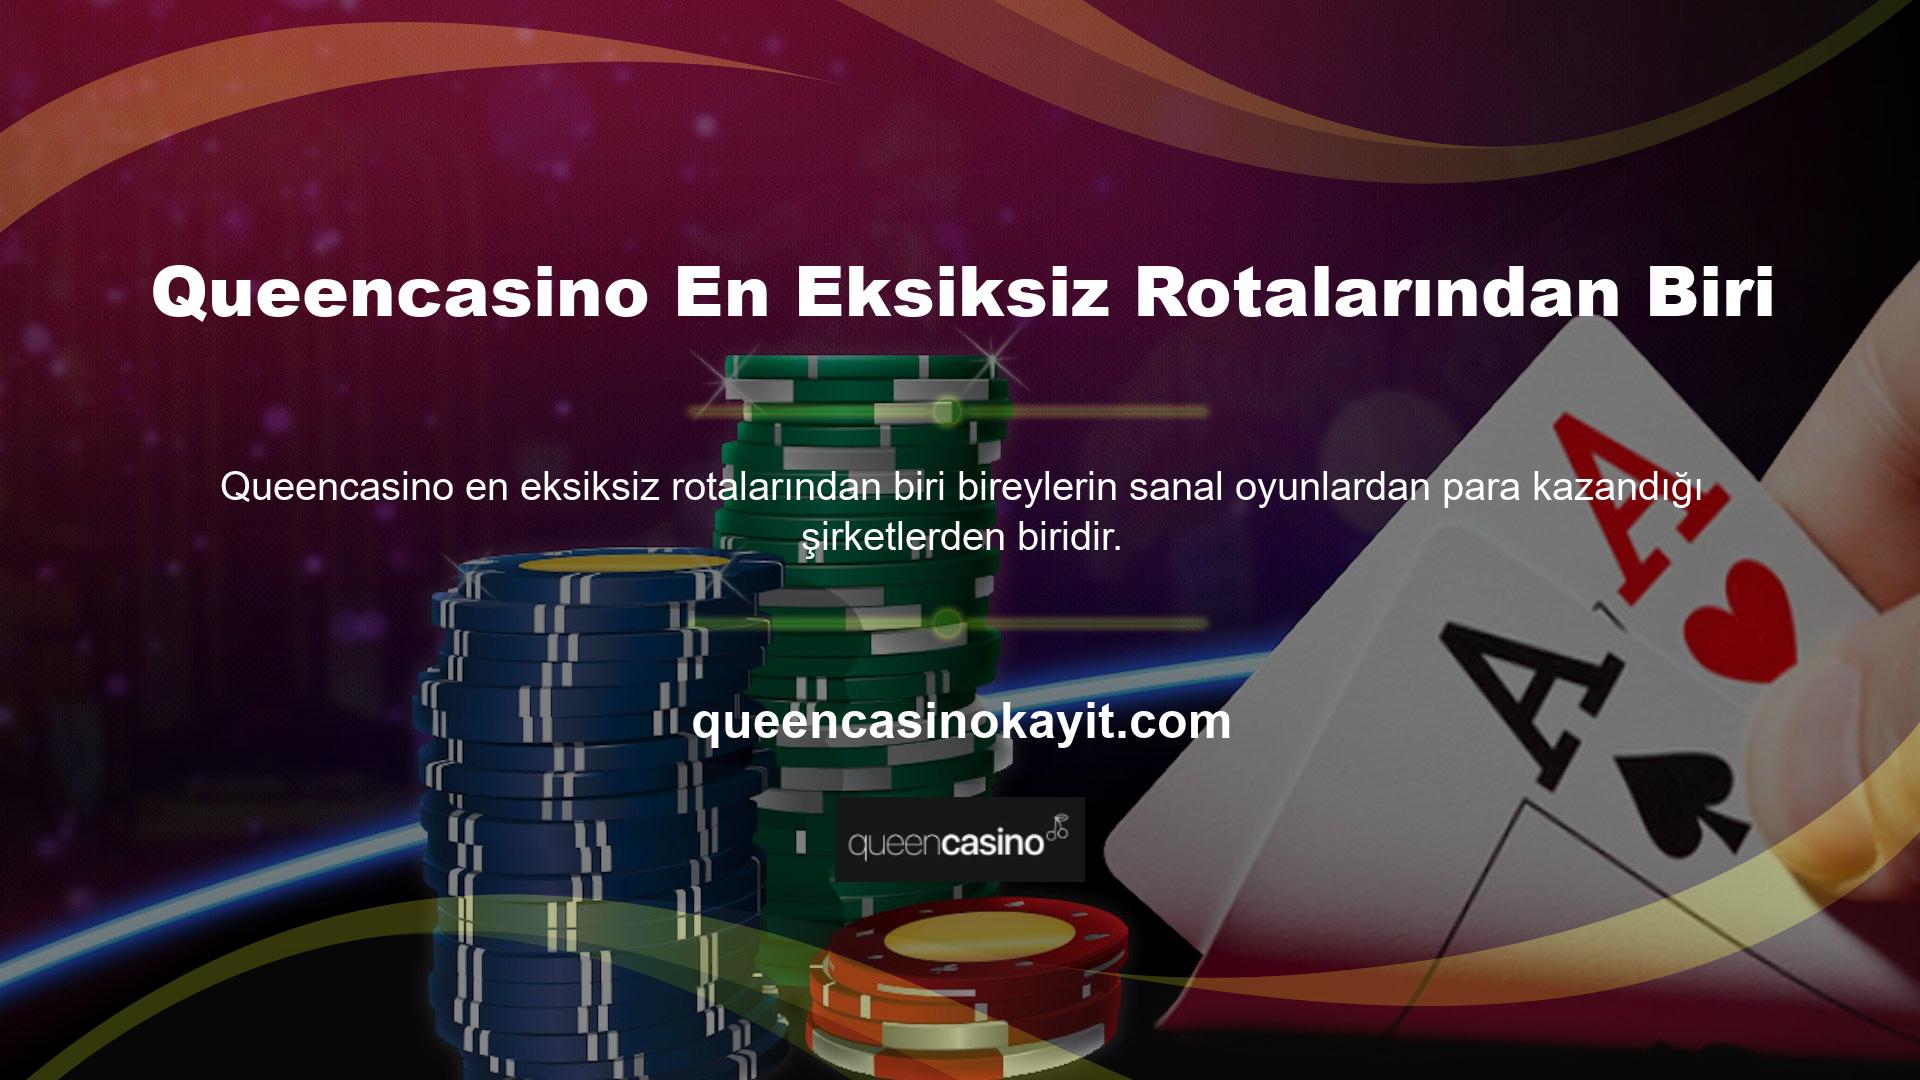 Bu site canlı oyunlar, sanal sporlar ve casino uygulamaları sunmaktadır